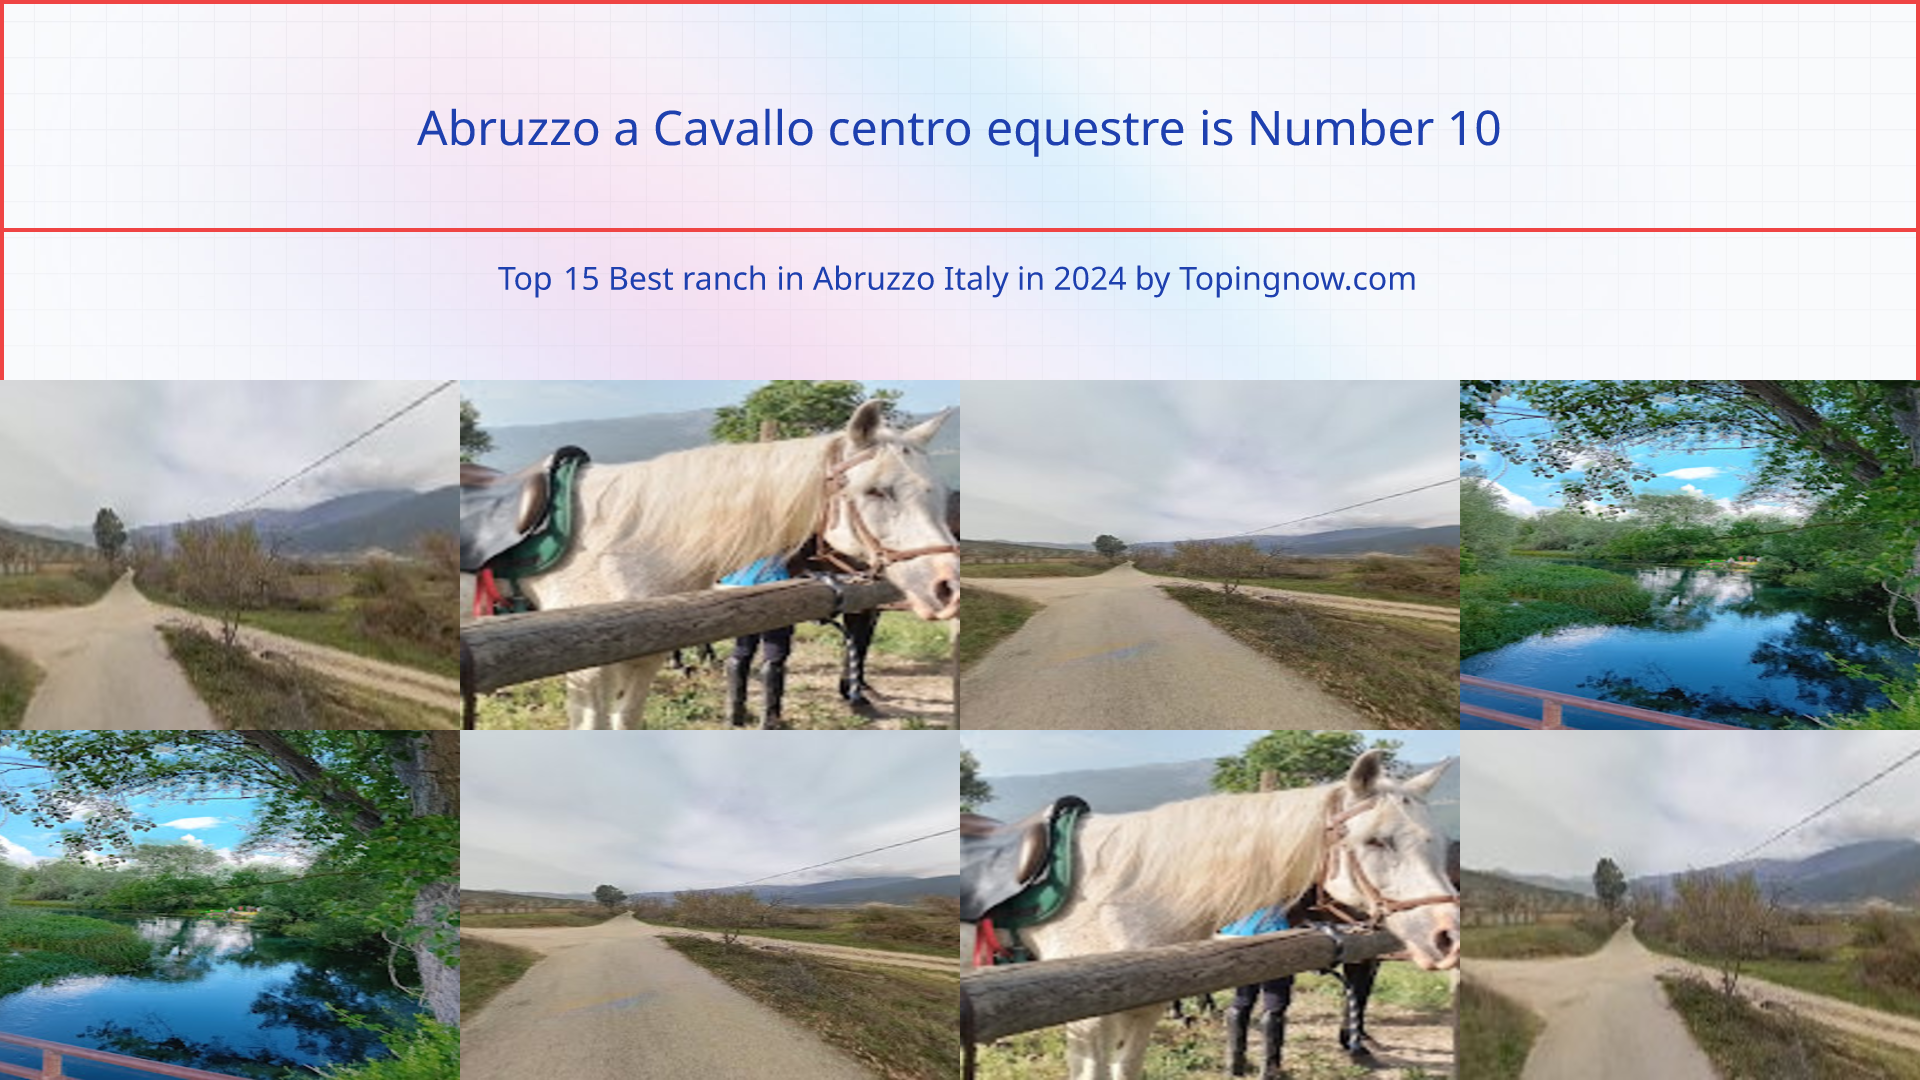 Abruzzo a Cavallo centro equestre: Top 15 Best ranch in Abruzzo Italy in 2024